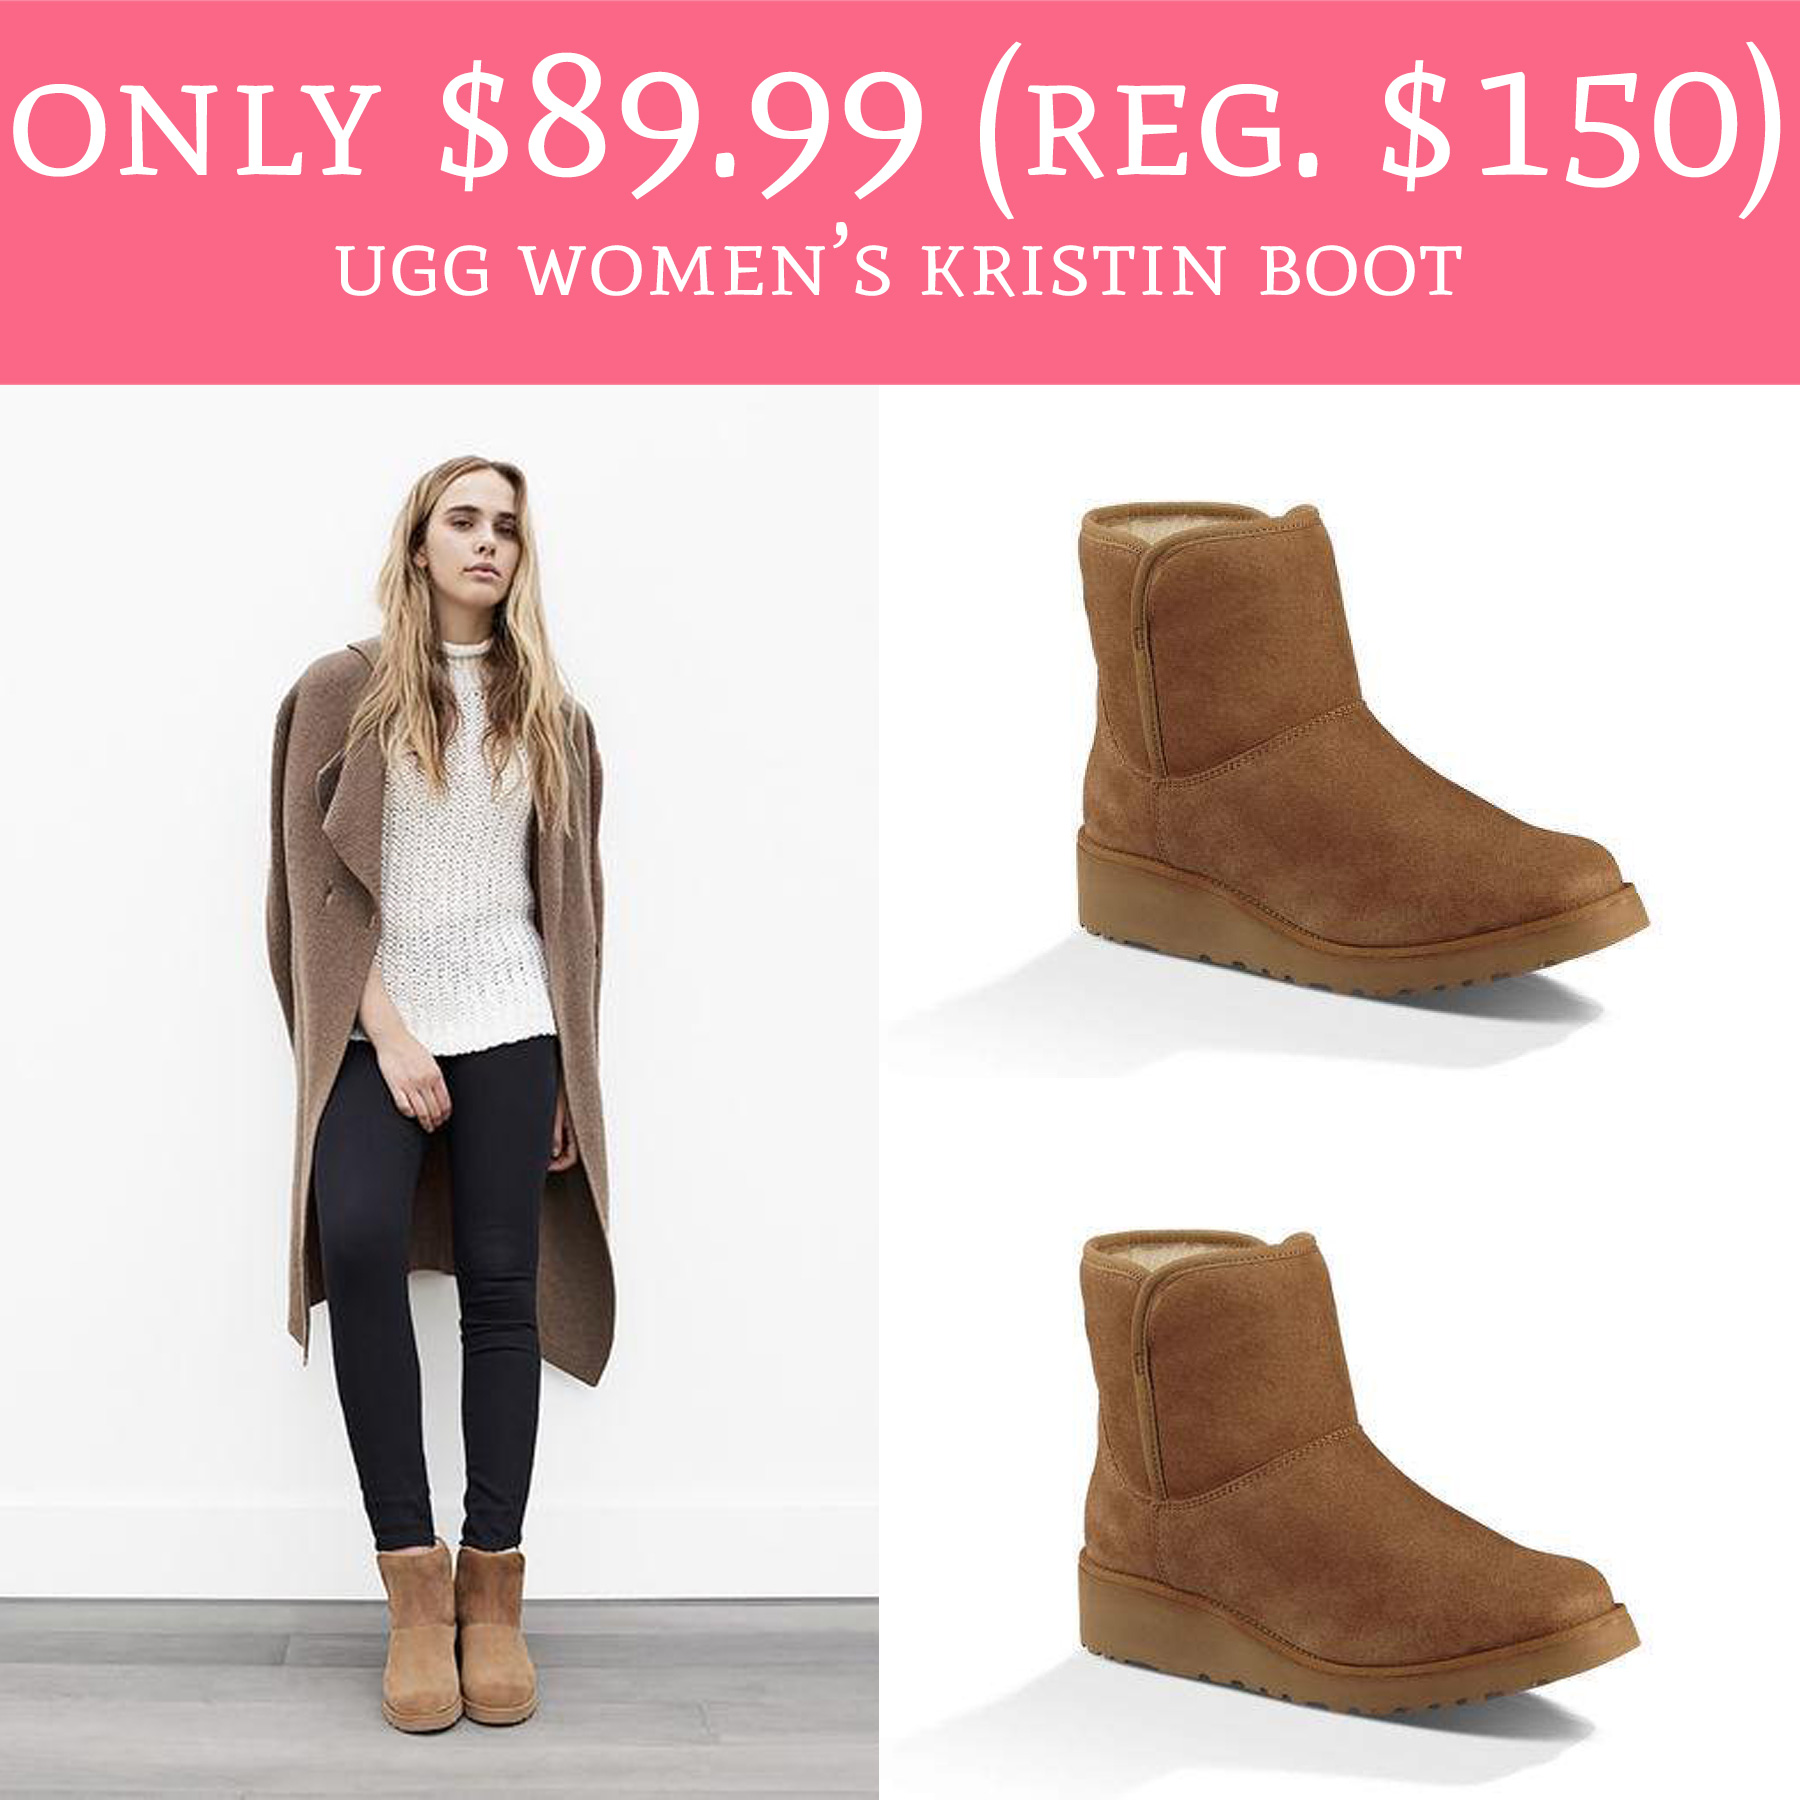 Only $89.99 (Regular $150) Ugg Australia Women's Kristin Boot - Deal